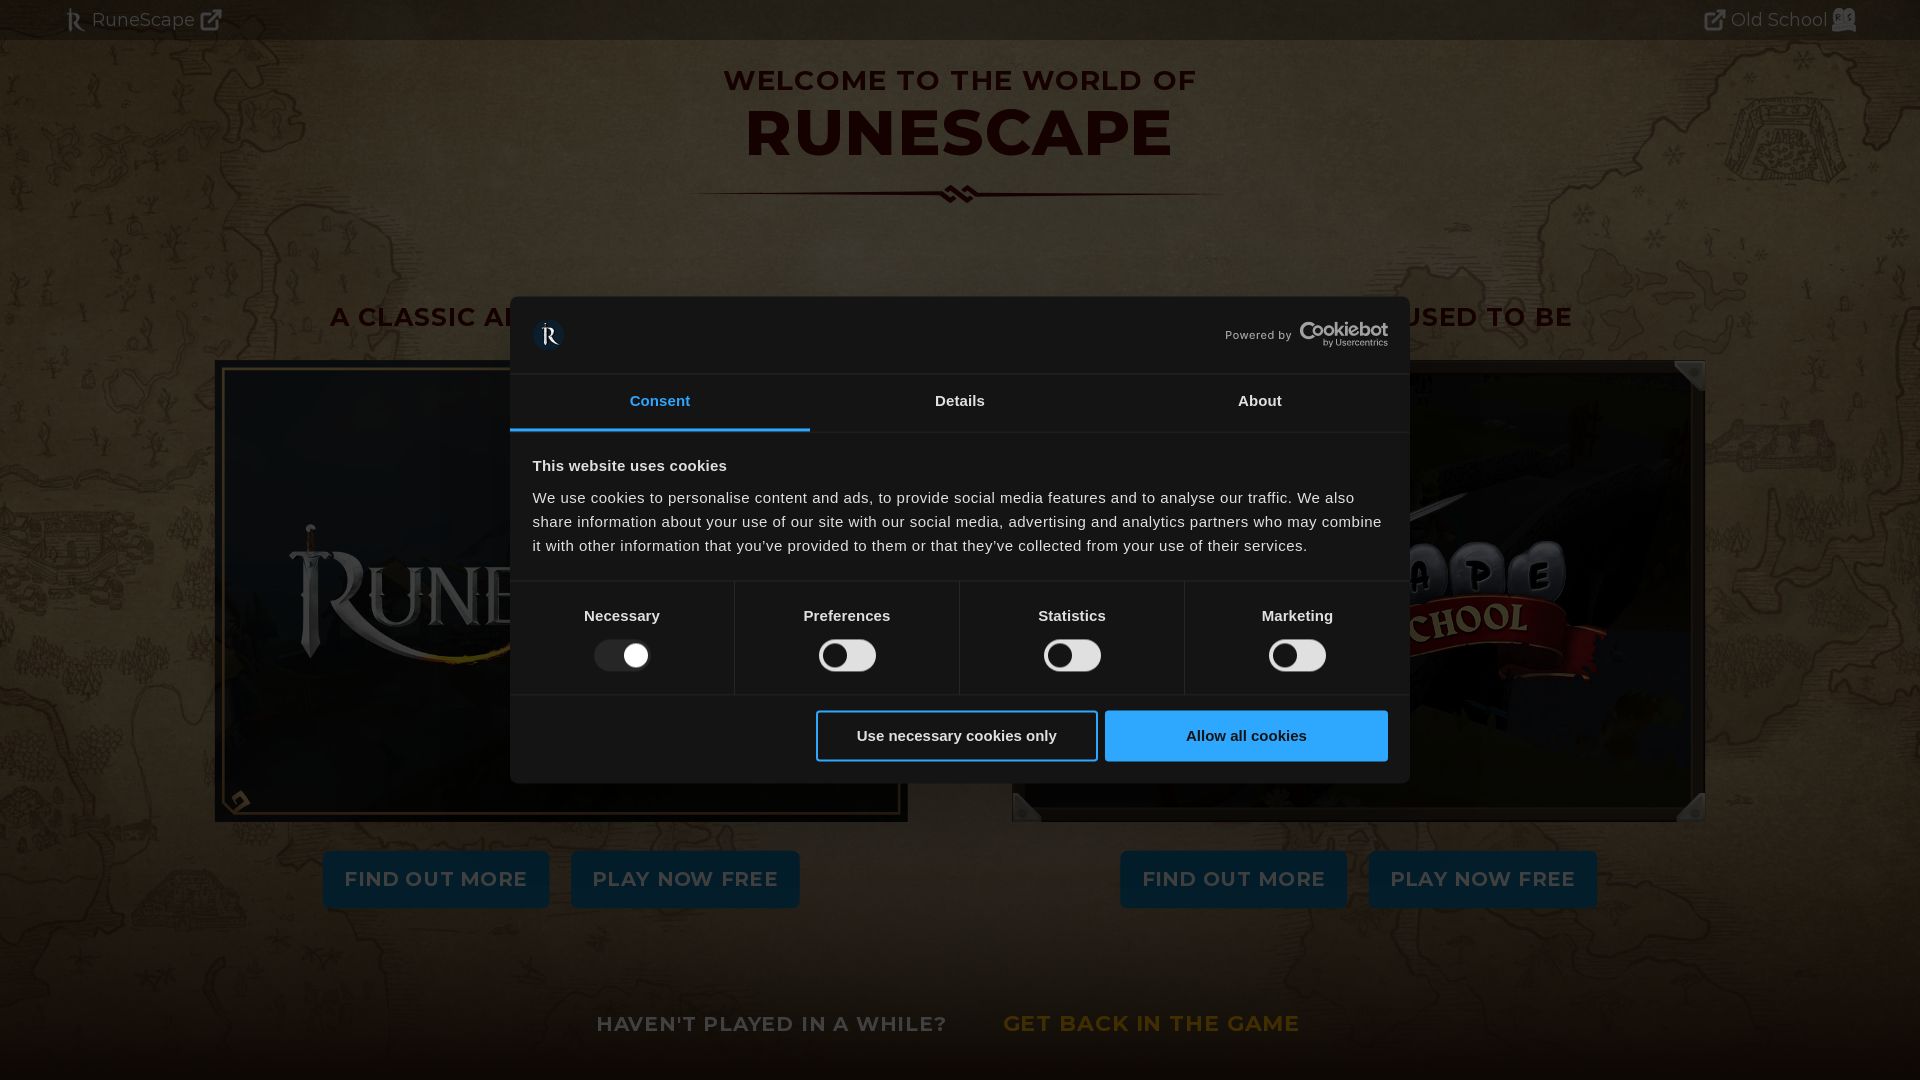 Website status runescape.com is   ONLINE